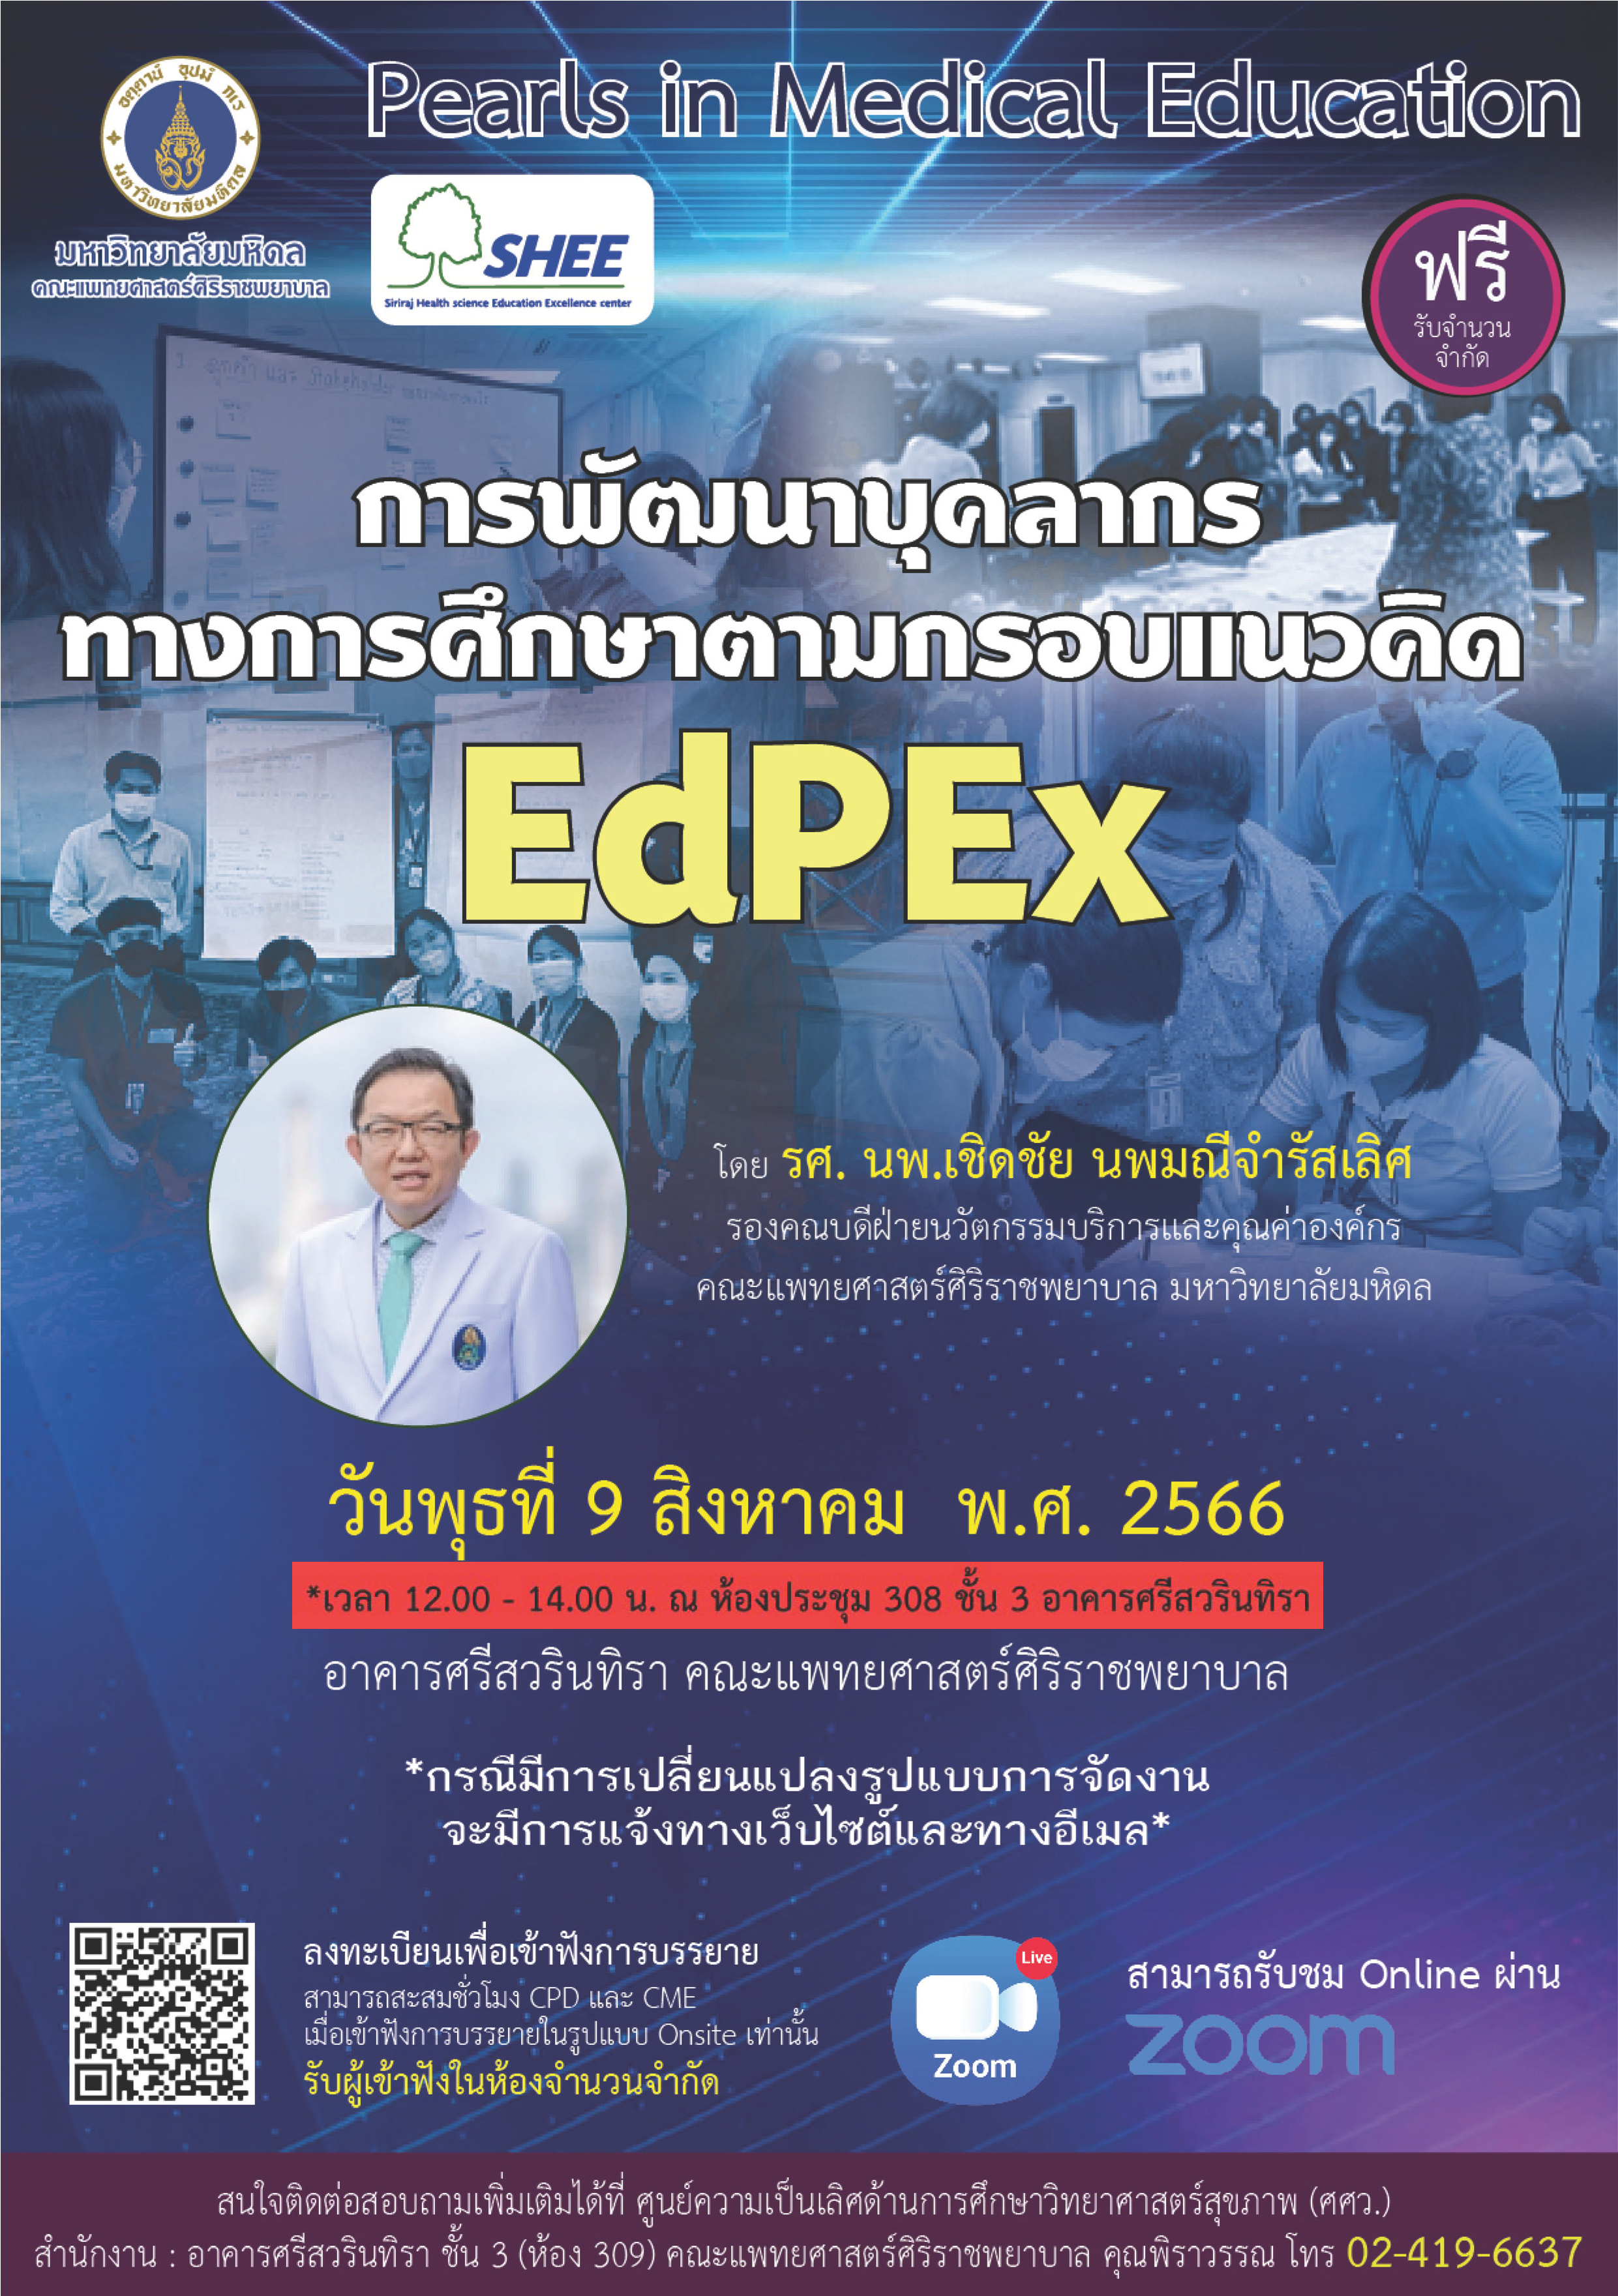 คณาจารย์สาขาวิชาเทคนิคการแพทย์เข้าร่วมการอบรมการพัฒนาบุคลากรทางการศึกษาตามกรอบแนวคิด EdPEx โดย รศ.นพ.เชิดชัย นพมณีจำรัสเลิศ ในวันพุธที่ 9 สิงหาคม 2566 เวลา 12.00 - 14.00 น.